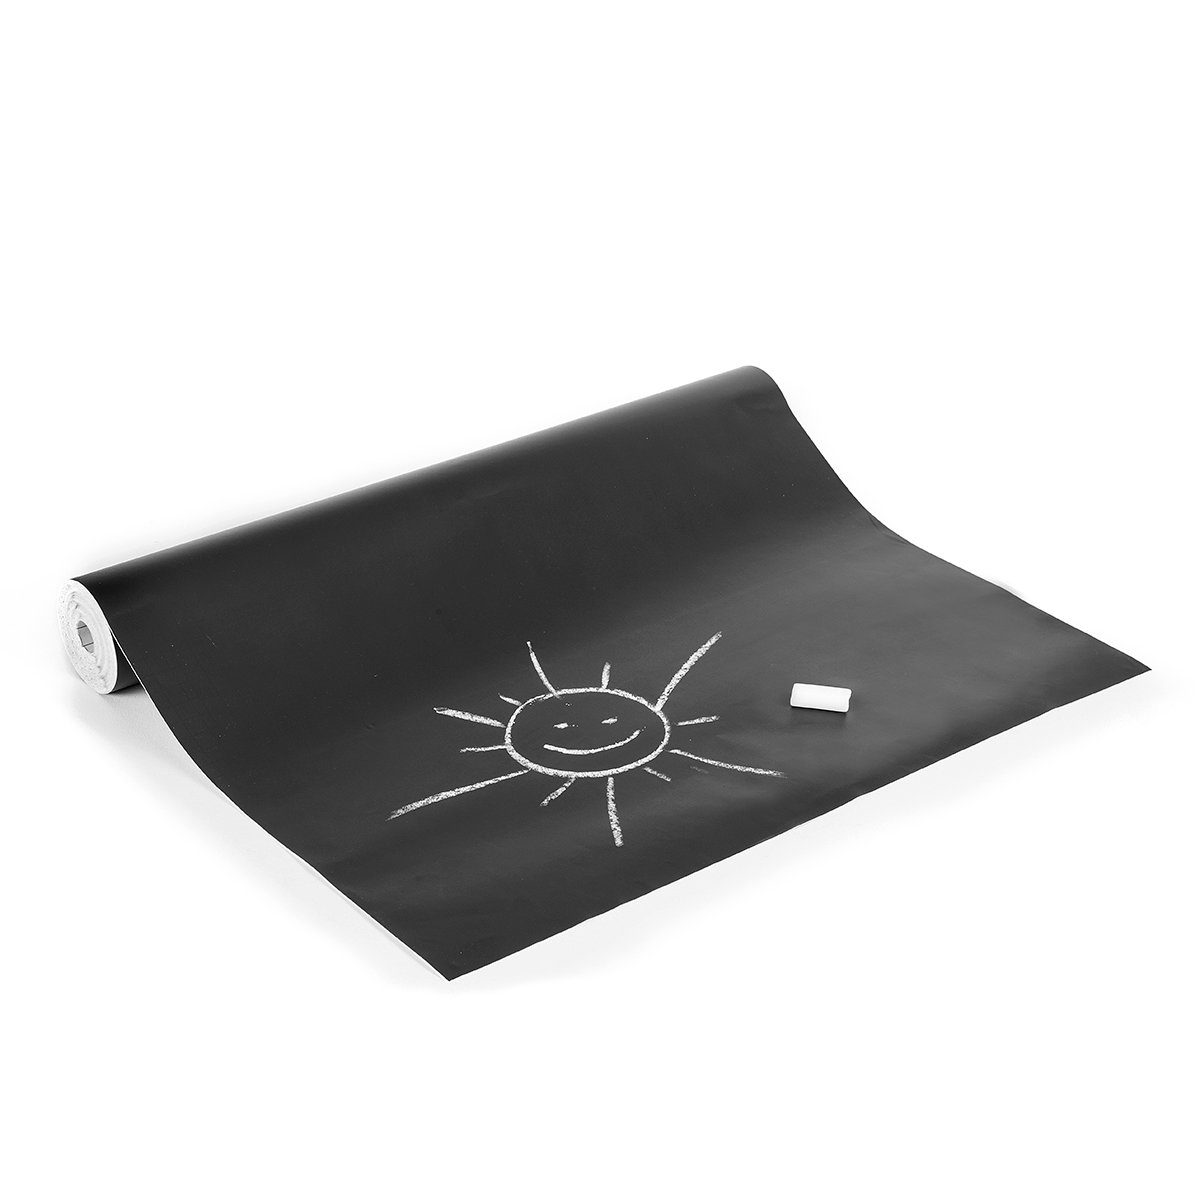 HaGa Tafelfolie Tafelfolie schwarz für Kreide in 45cm Breite (Meterware)